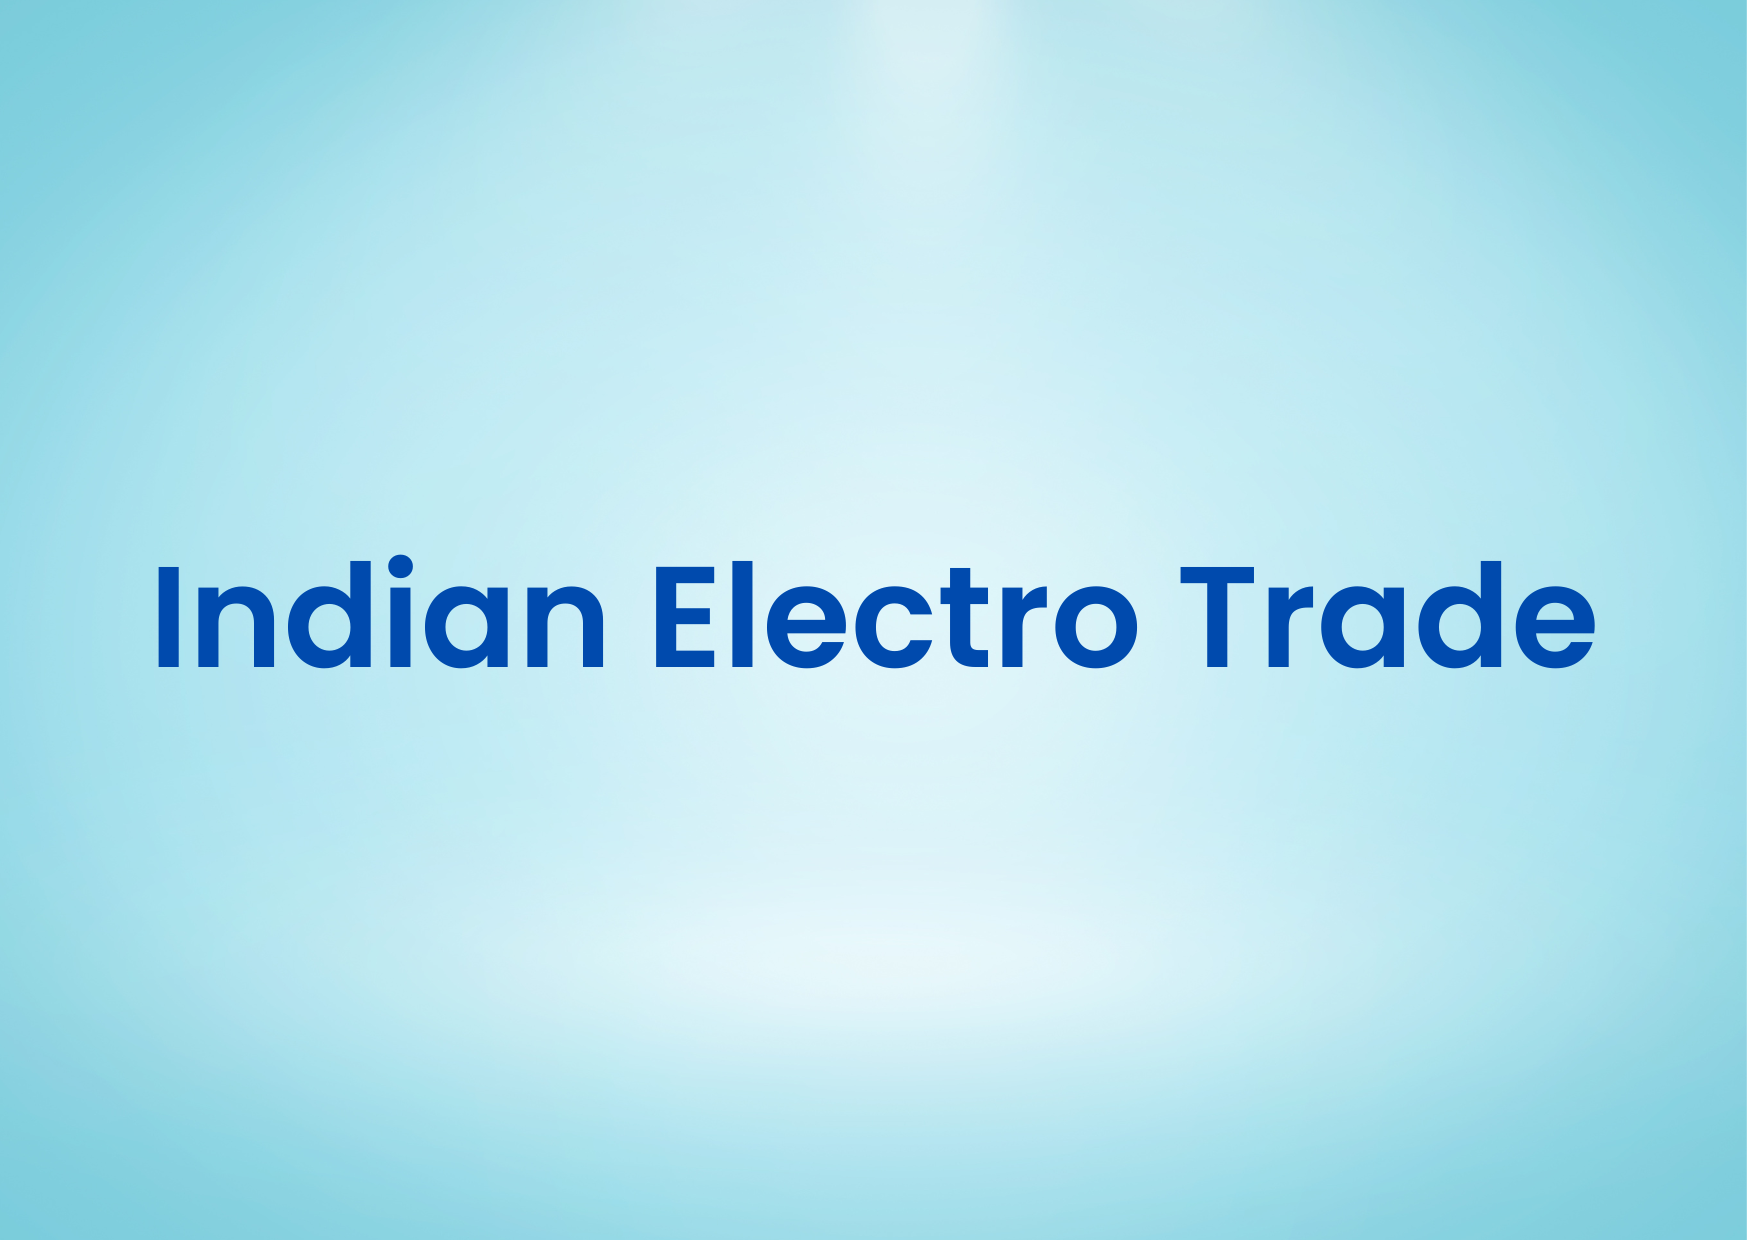 Indian Electro Trade,   